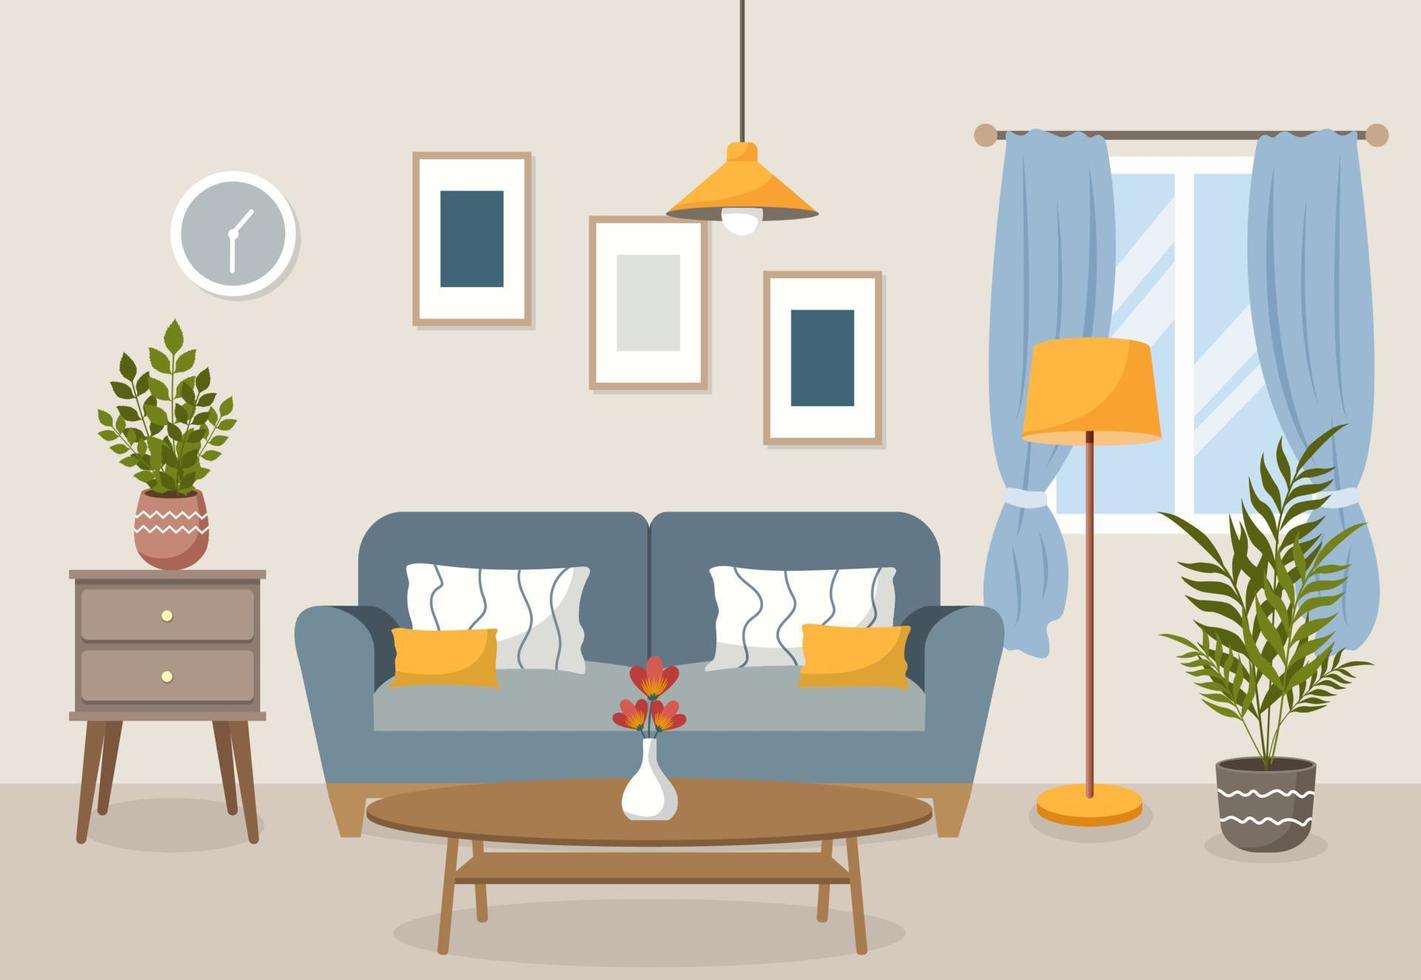 interior de la sala de estar. ilustración plana vectorial. cómodo sofá con cojines, linterna, ventana, sillón y plantas de interior, mesita de noche con flor. vector